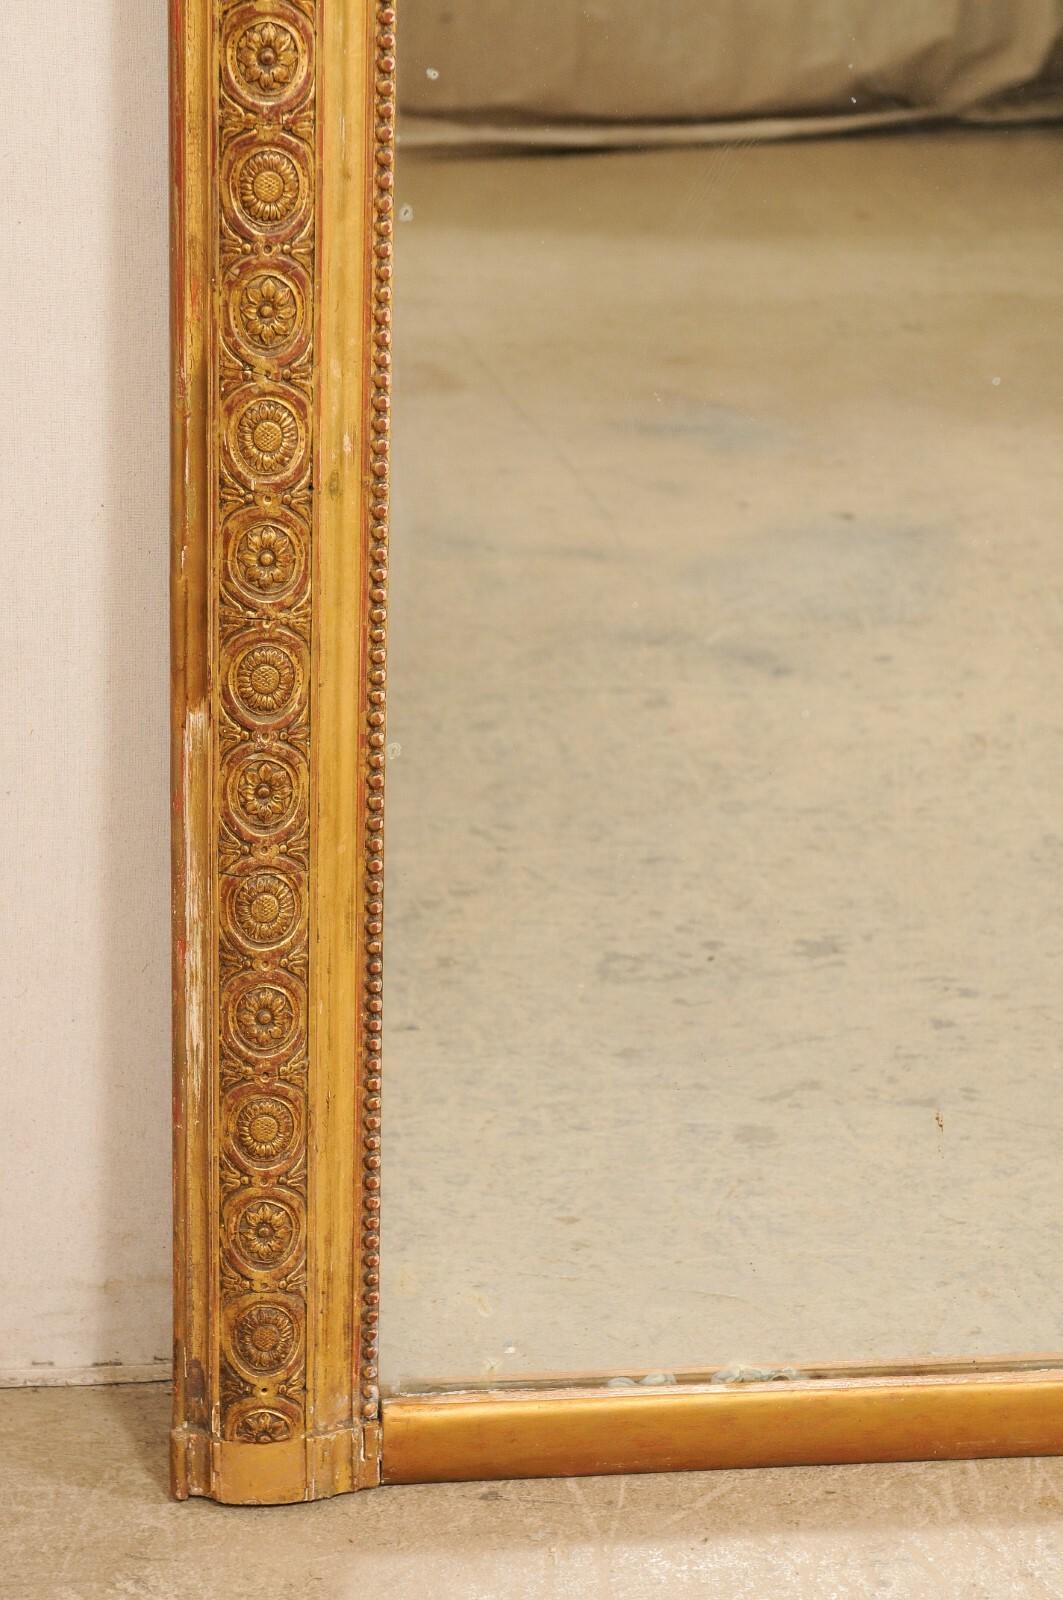 Ein großer französischer geschnitzter und vergoldeter Holzspiegel aus dem späten 19. Jahrhundert. Dieser antike Spiegel aus Frankreich verfügt über eine rechteckige Einfassung mit einem sich wiederholenden floralen Medaillon-Motiv, das in die